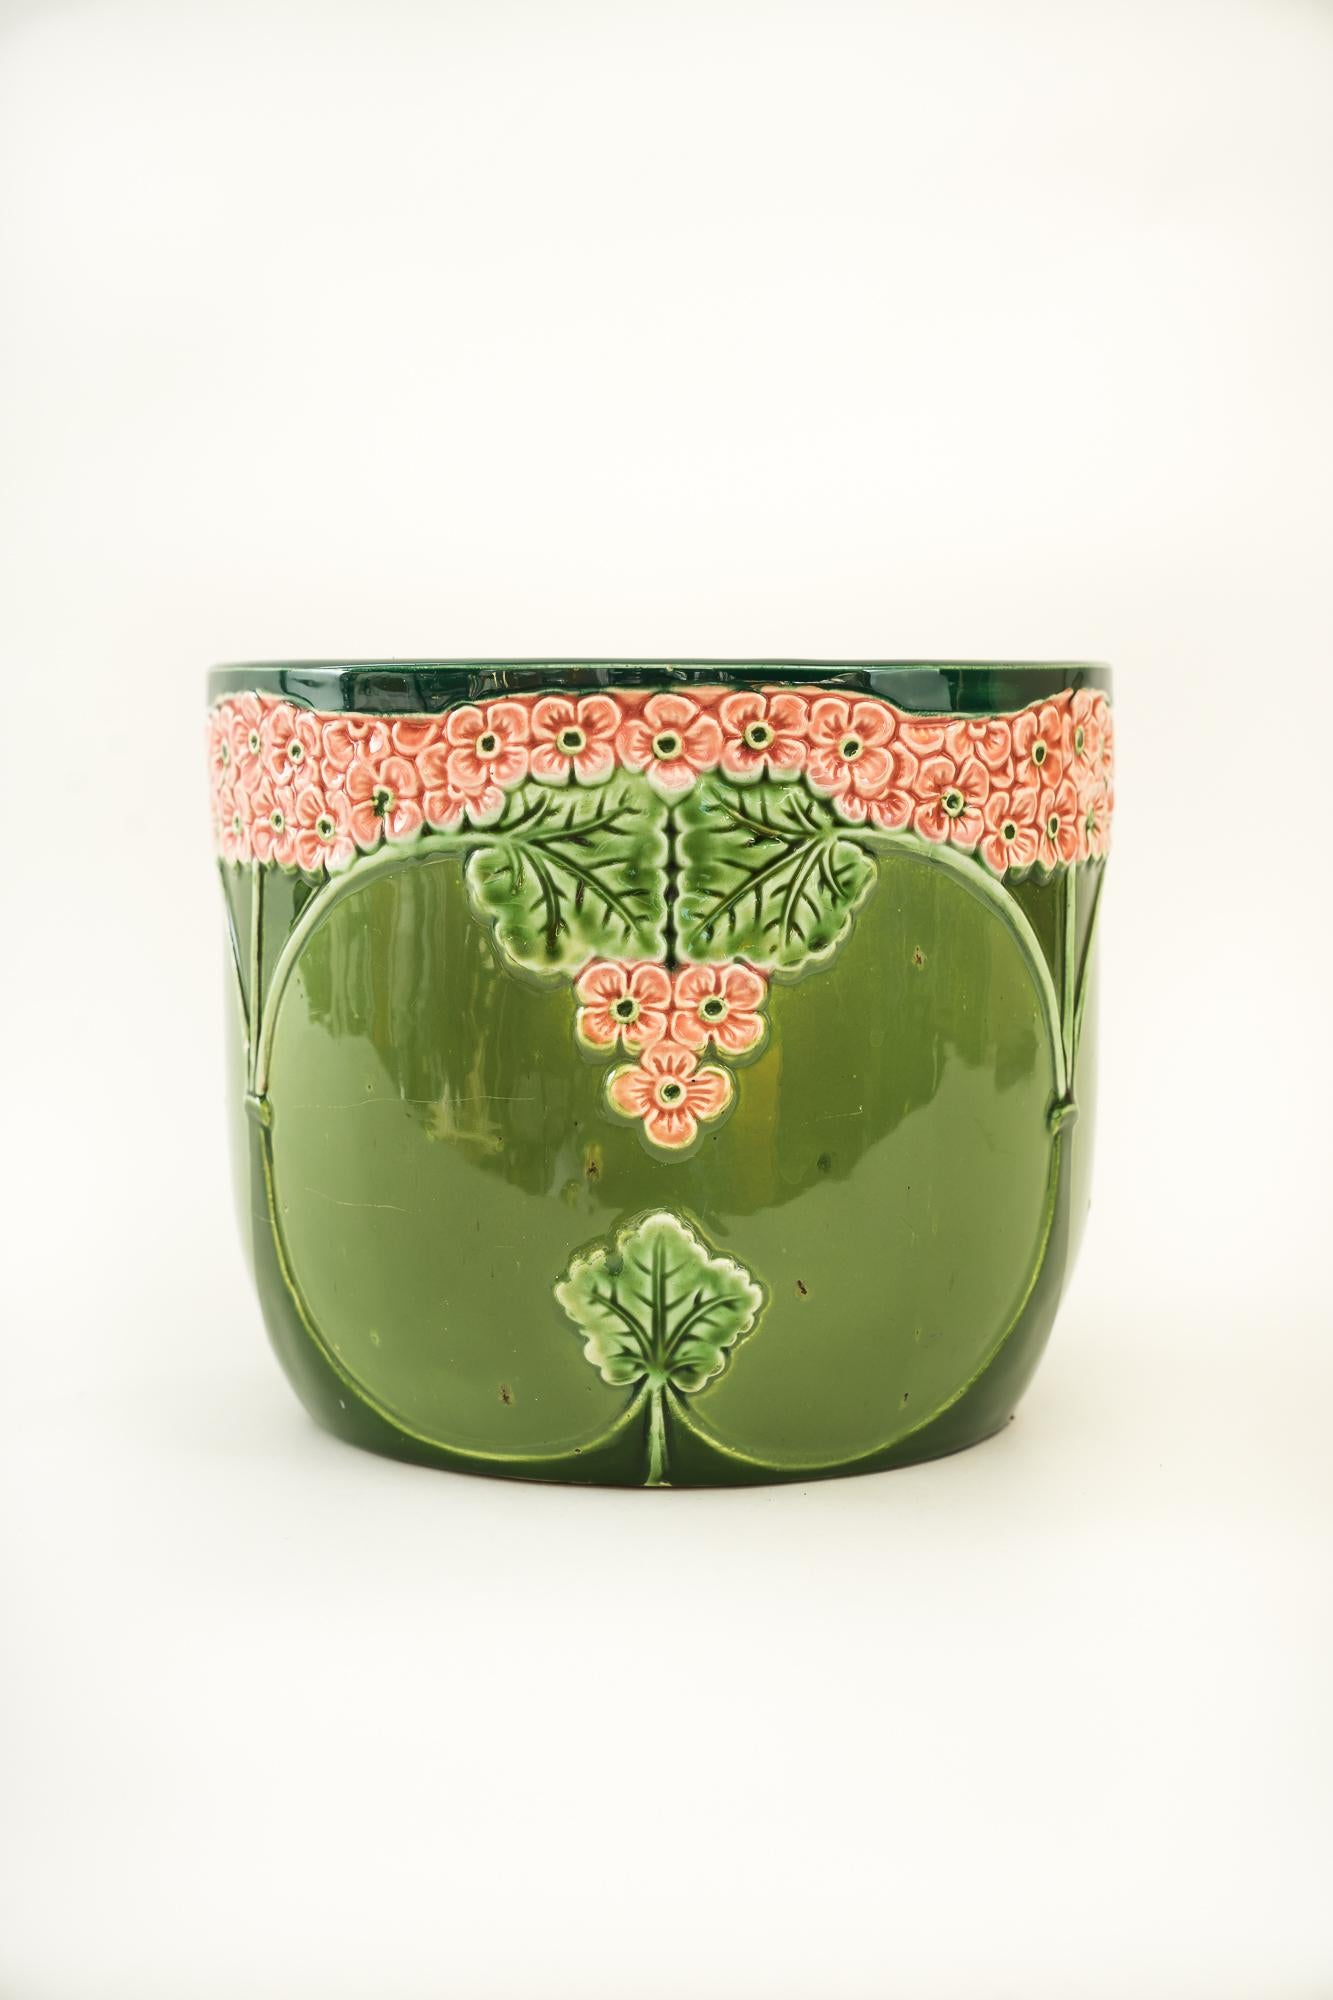 Jugendstil ceramic flower pot vienna around 1900s 
Original condition.